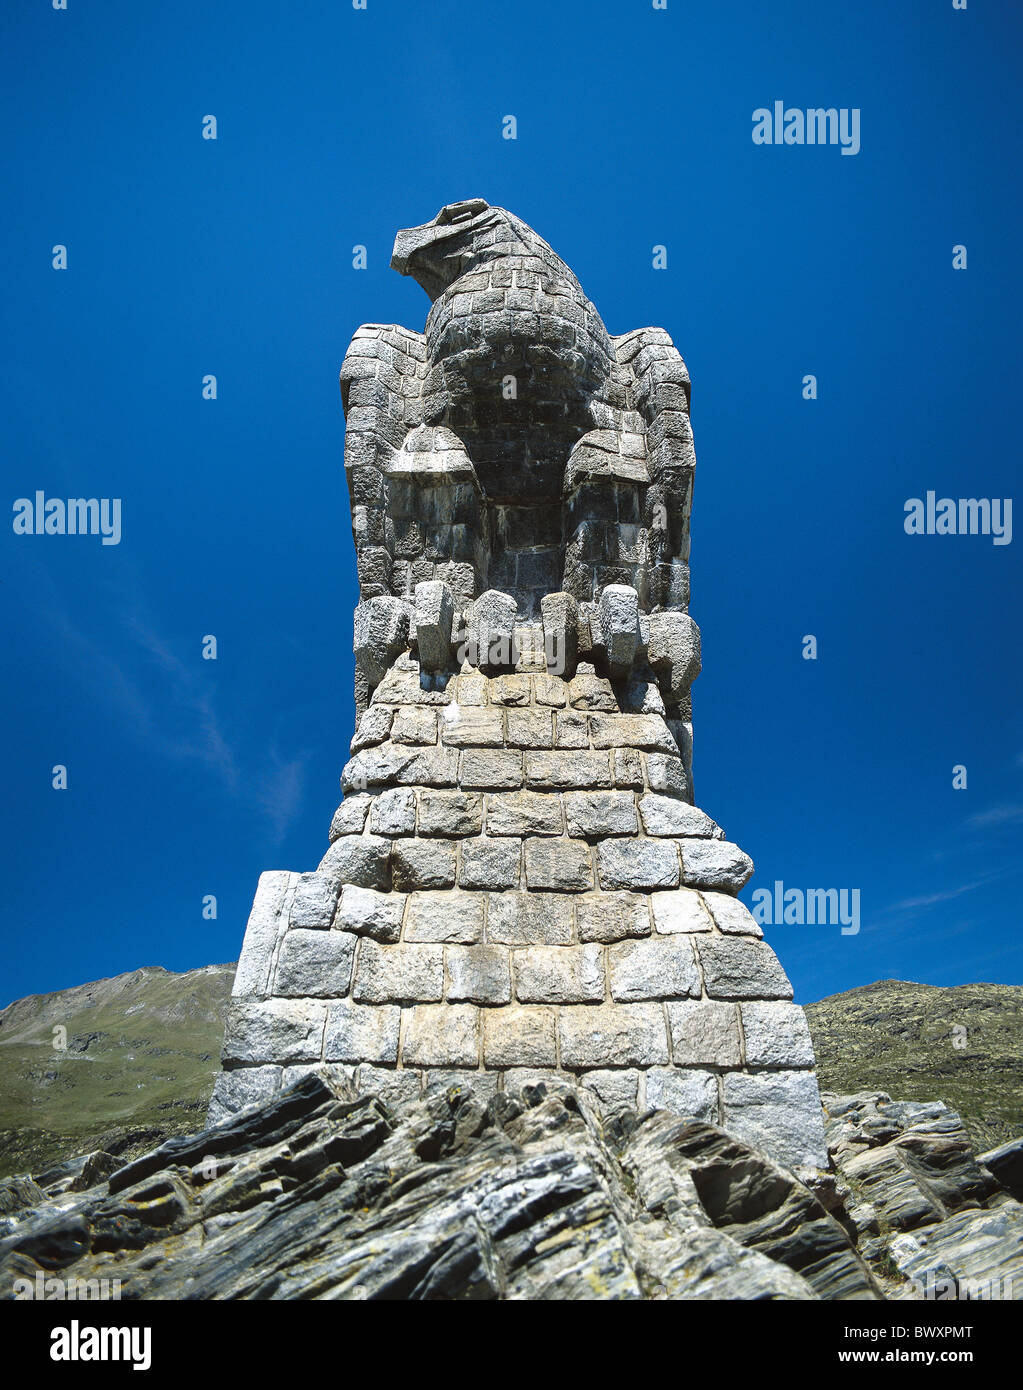 plastics sculpture stone figure eagle Switzerland Europe Valais Simplonpass pass height Stock Photo